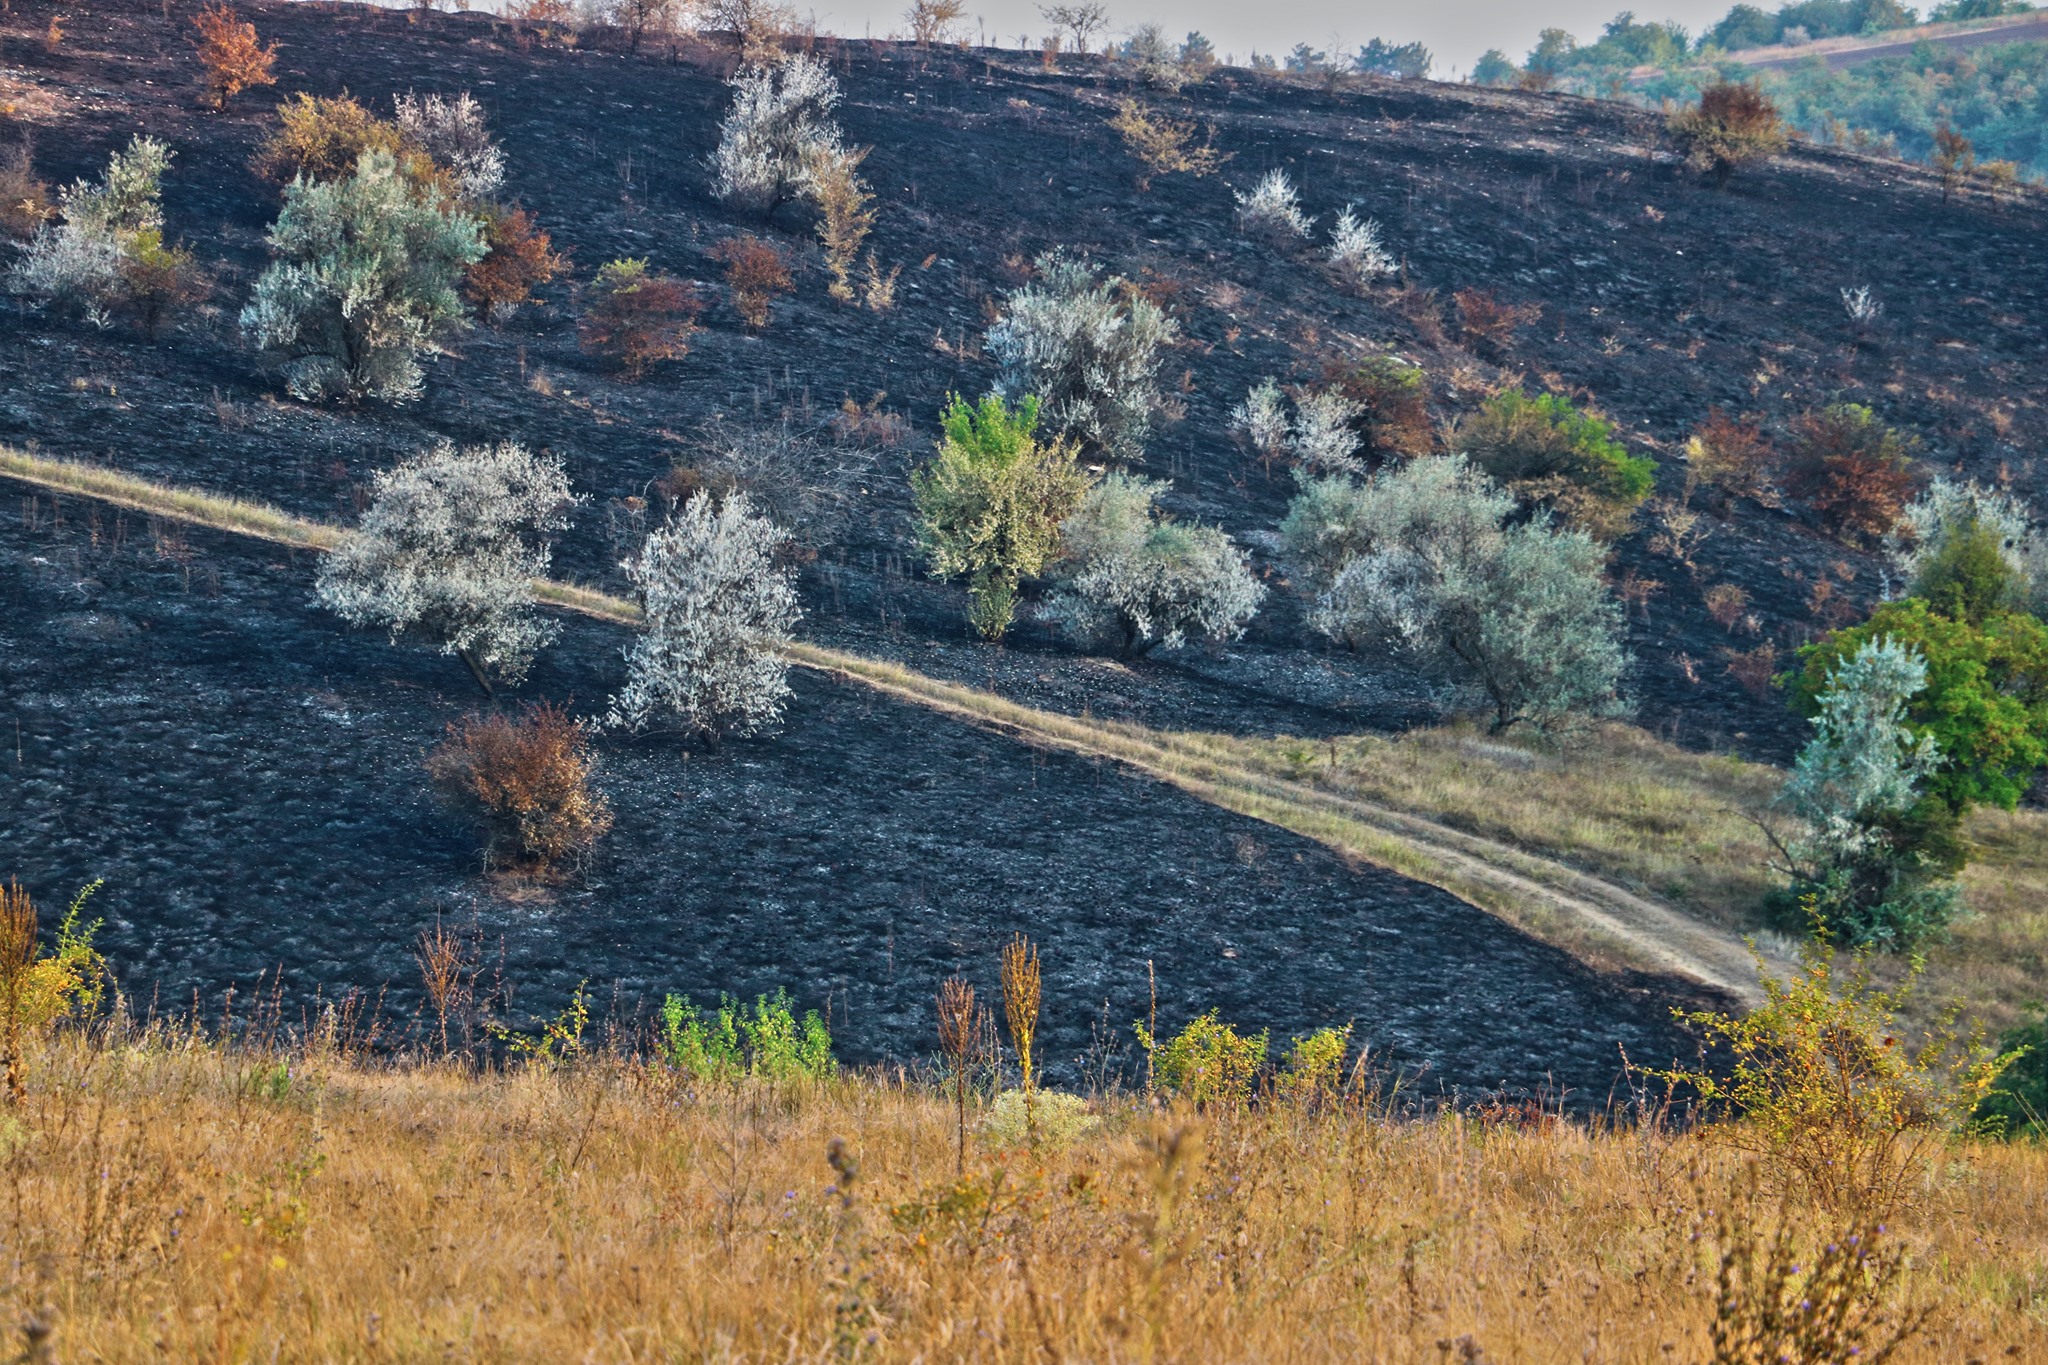  Focul a mistuit o suprafață din Rezervația Orheiul-Vechi